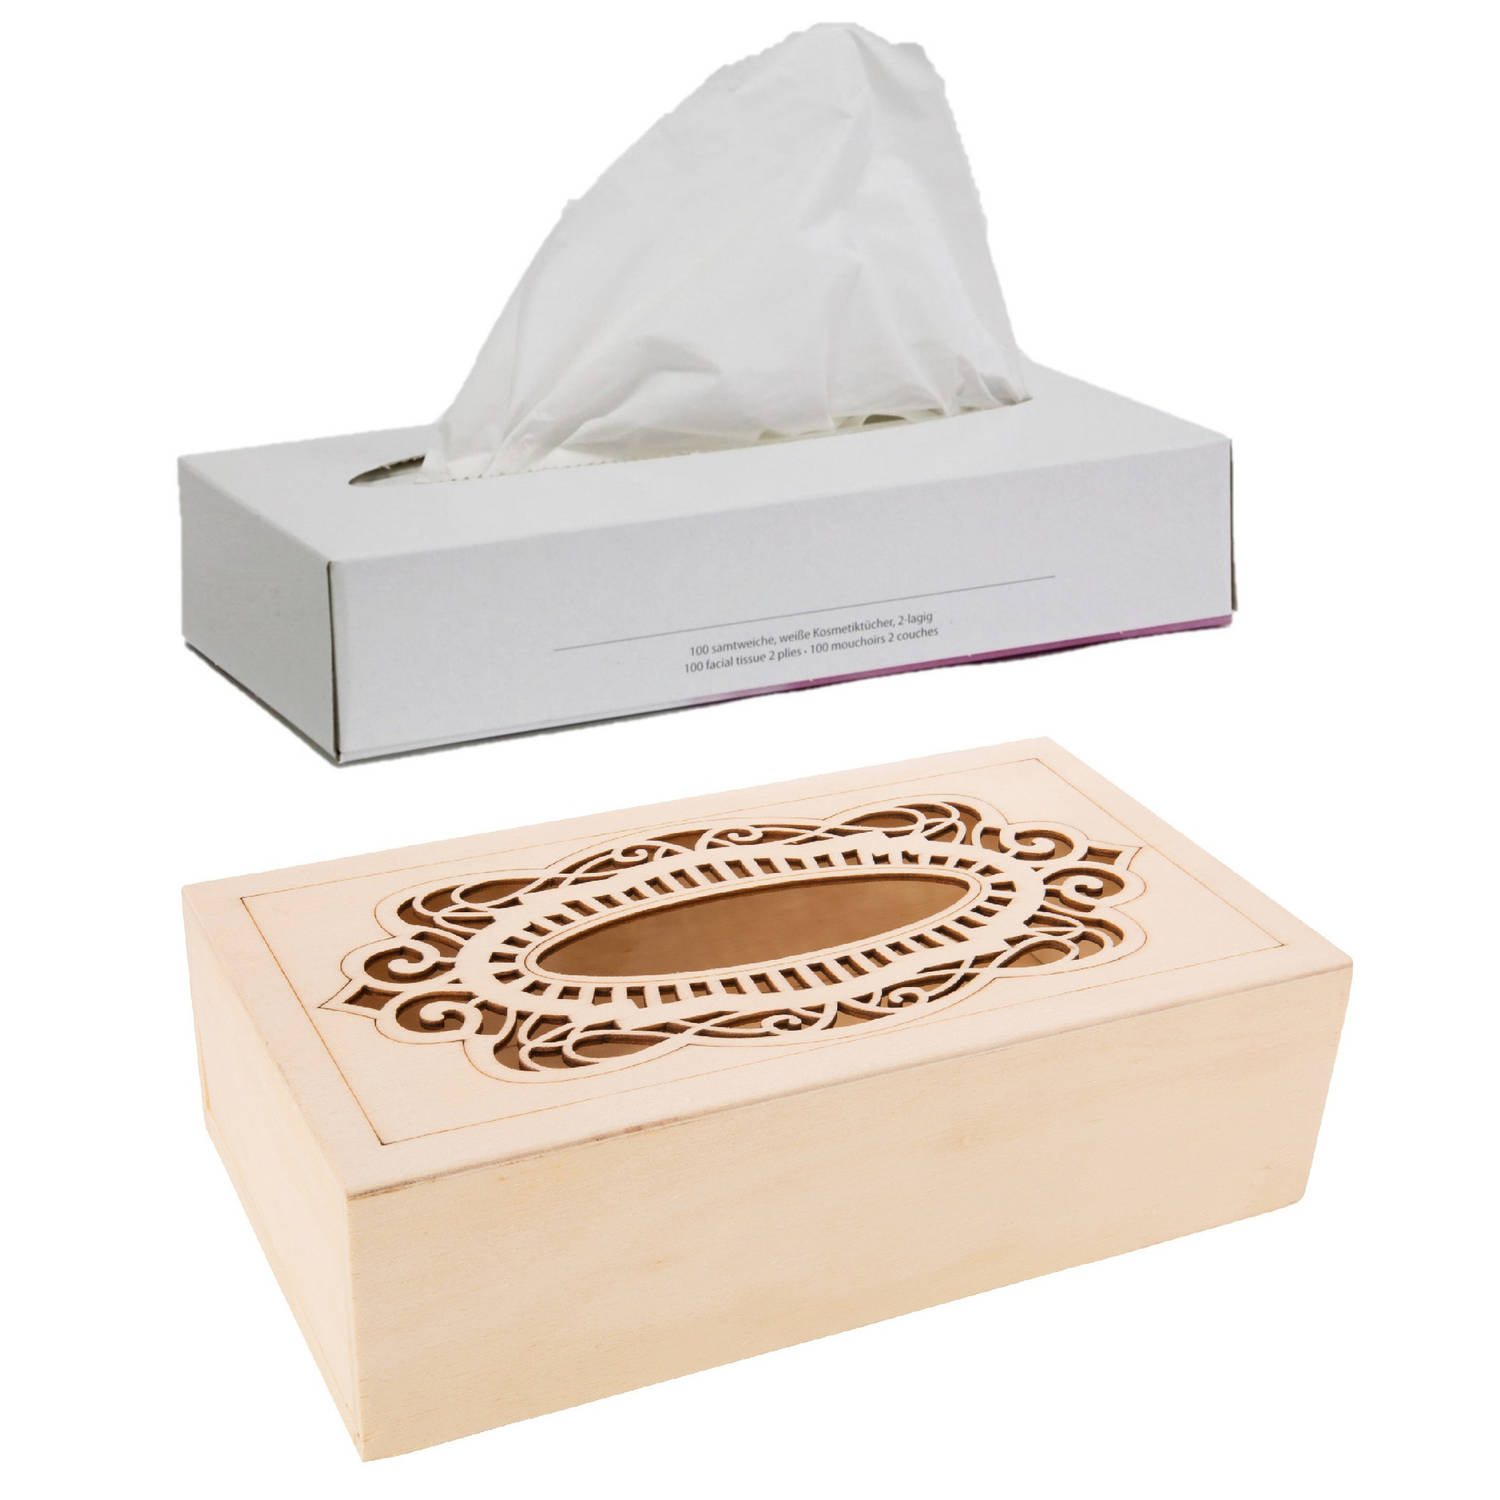 Tissuedoos-tissuebox van hout met sierlijk design 26 x 14 cm met vulling Tissuehouders